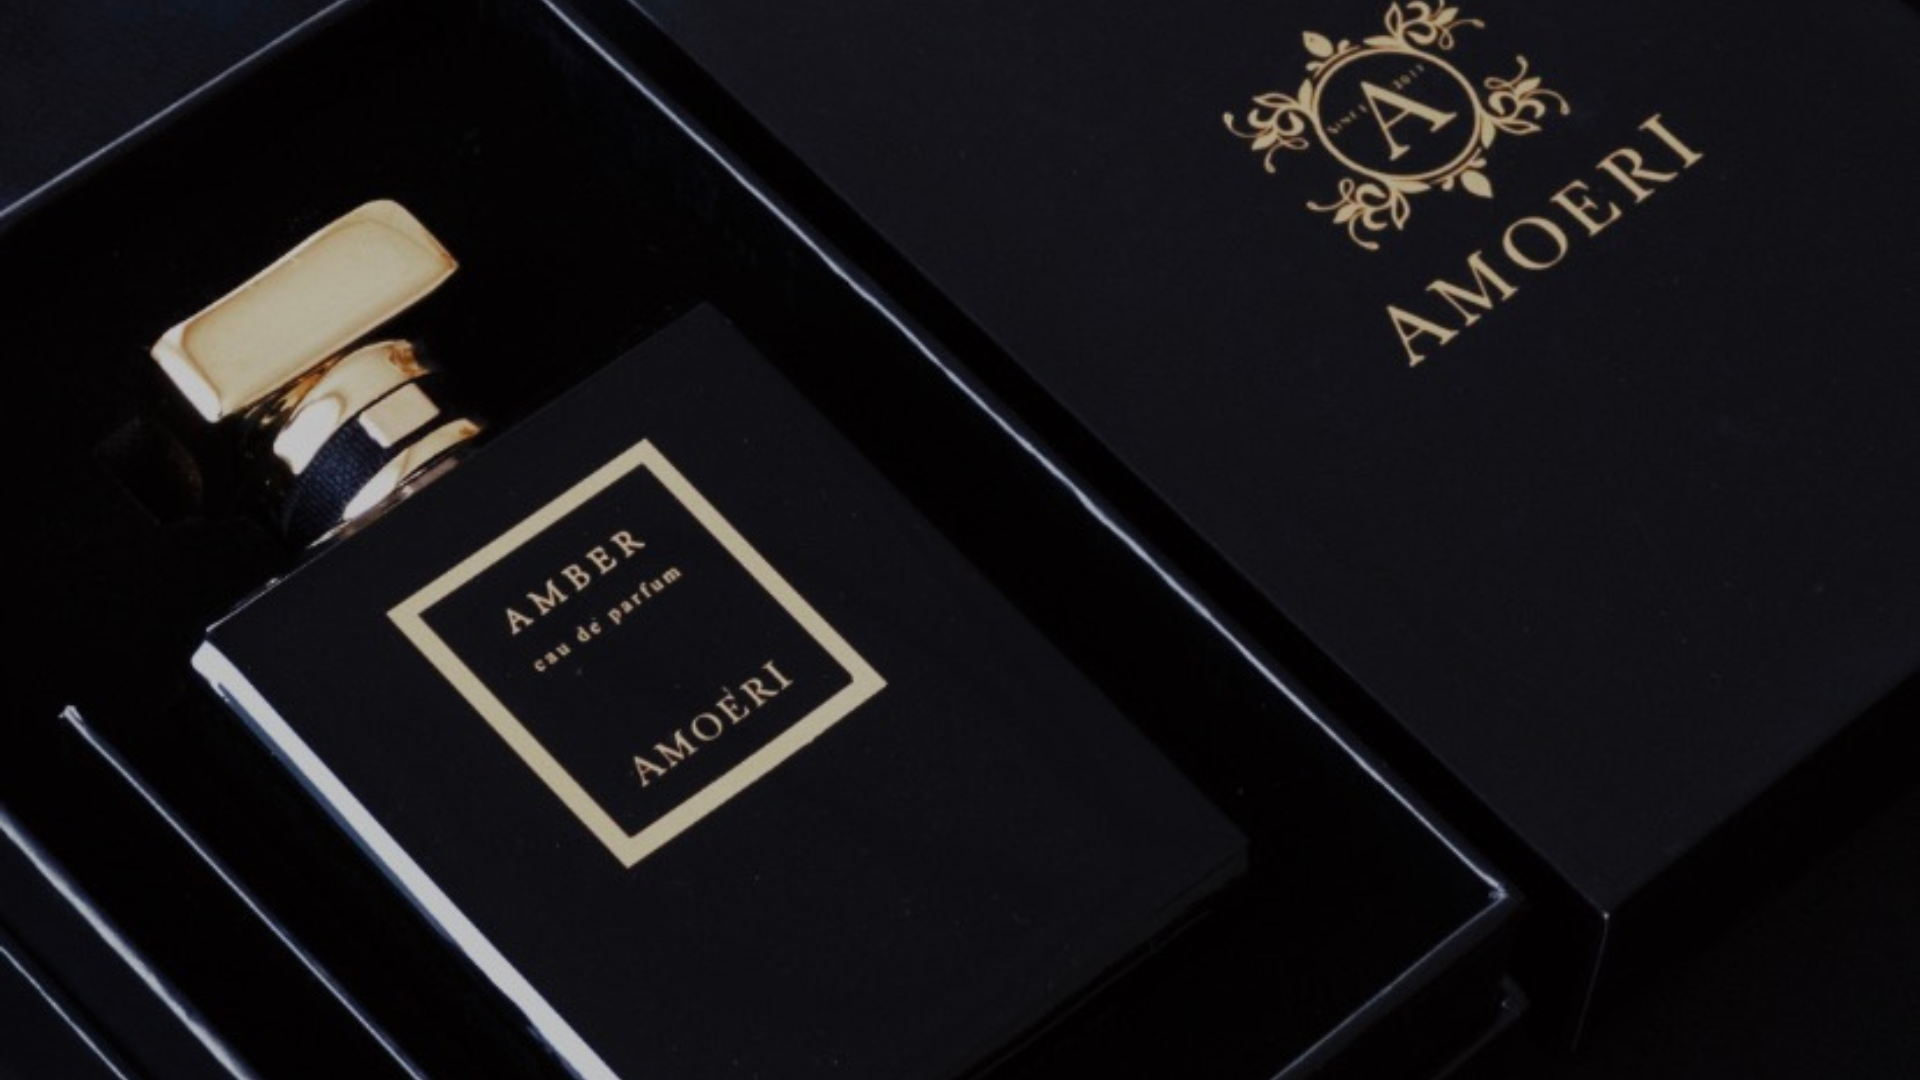 Amoeri Eau de Parfum Amber Unisex parfum met de rijke houtachtige ondertoon